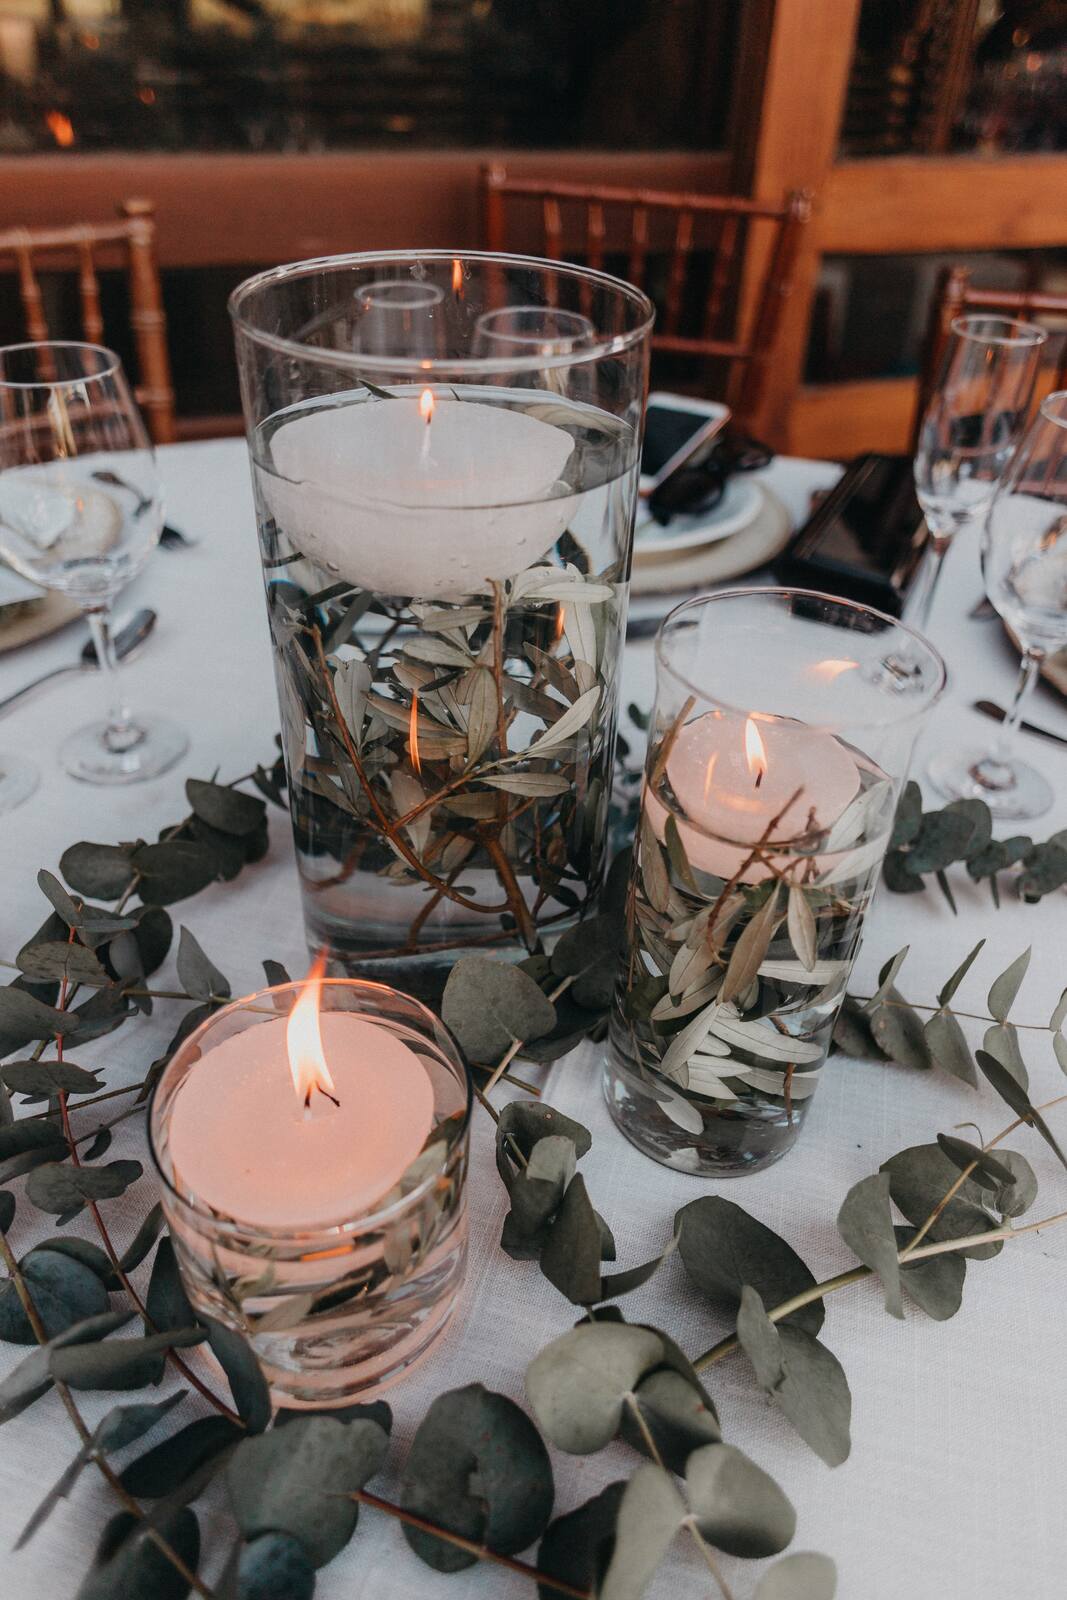 centro de mesa com vasos de vidro decorados com velas brancas na água com ramos de eucalipto